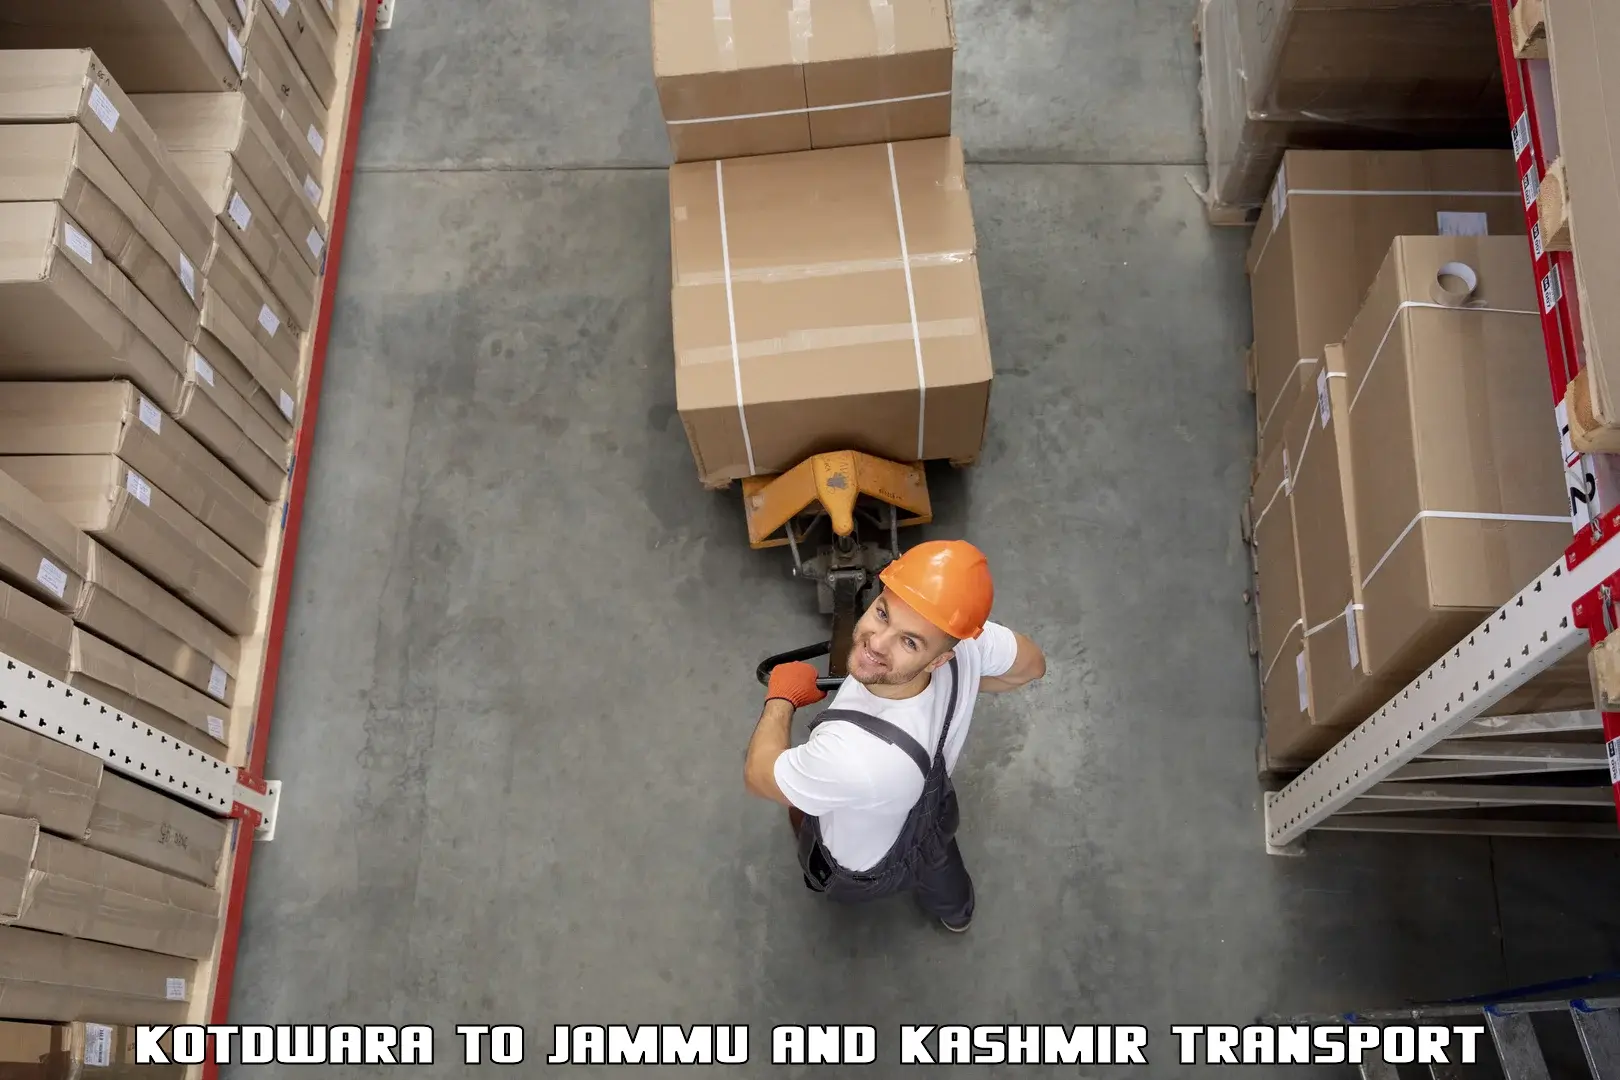 Daily transport service Kotdwara to IIT Jammu